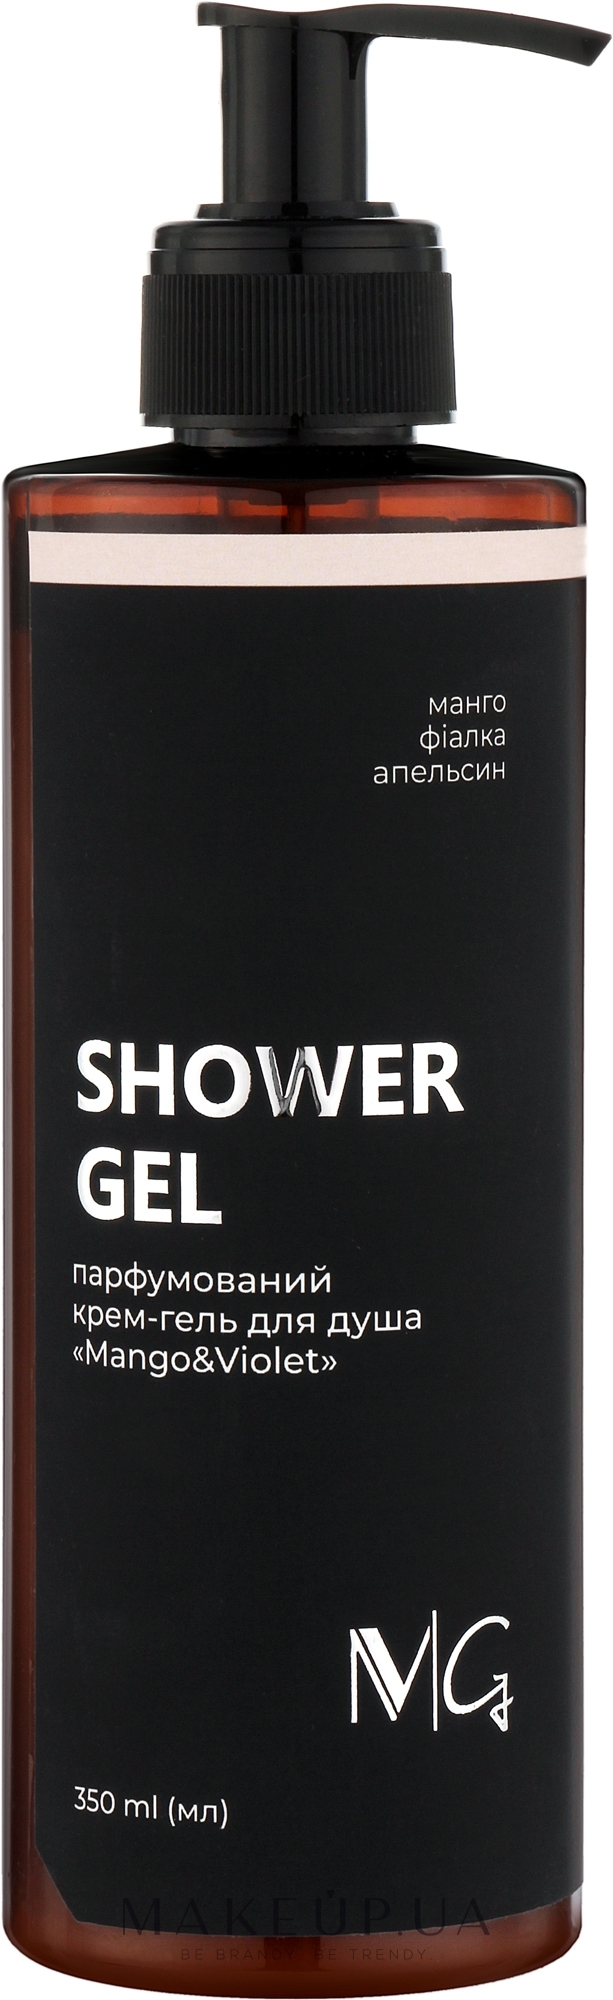 Парфюмированный крем-гель для душа с экстрактом алоэ вера и маслом авокадо - MG Spa Mango & Violet Shower Gel — фото 350ml